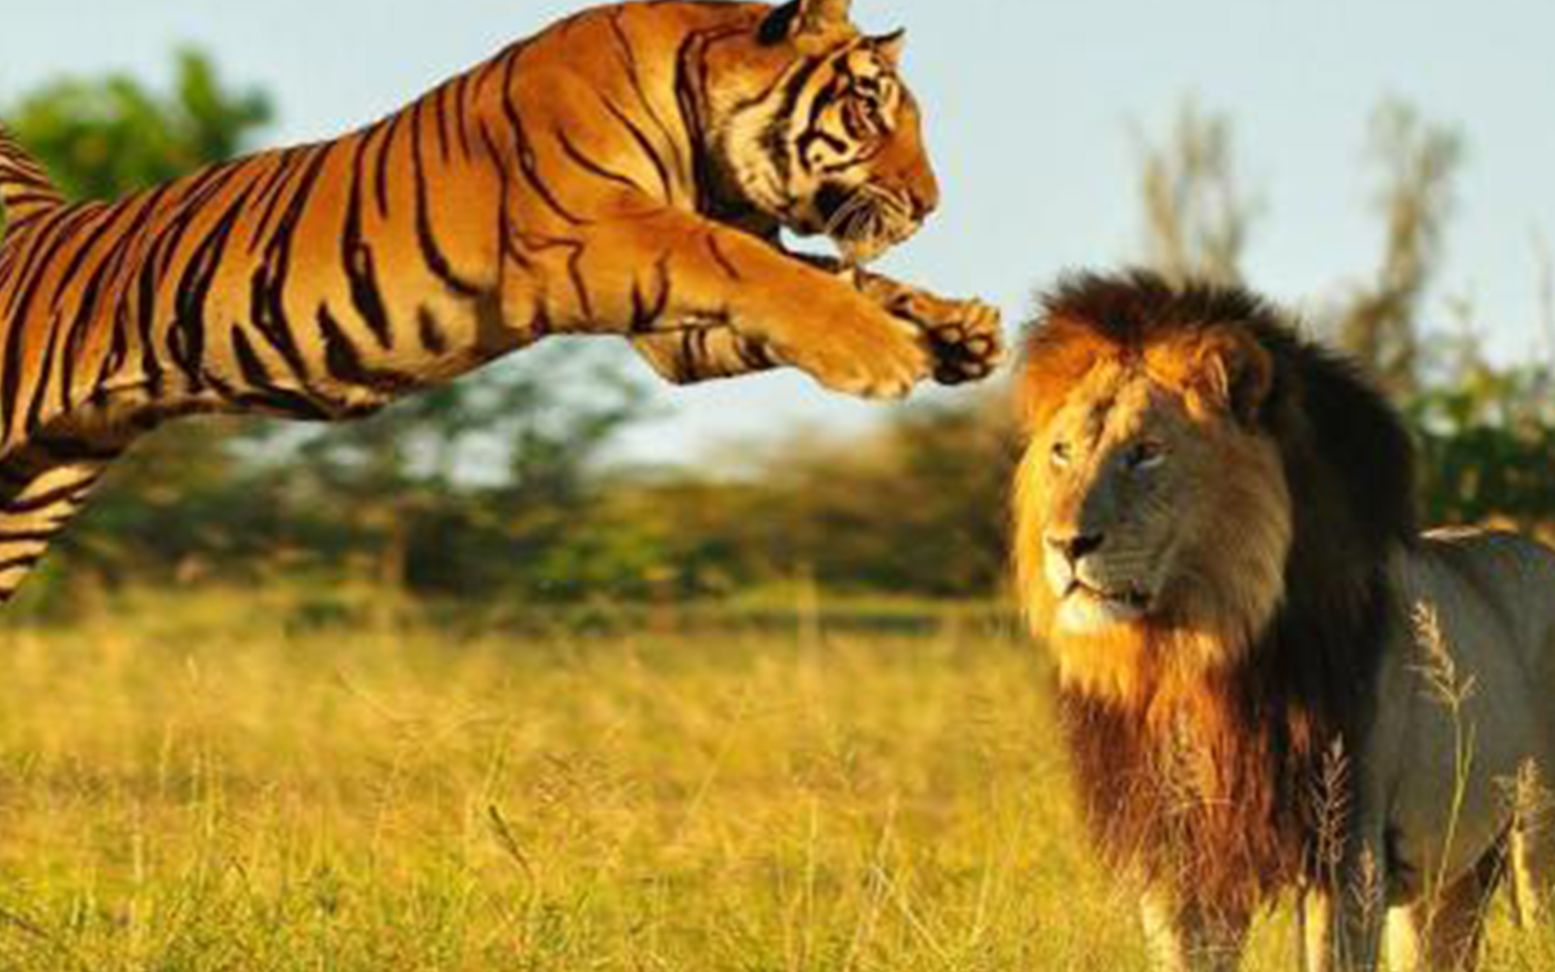 狮子和老虎打架图片